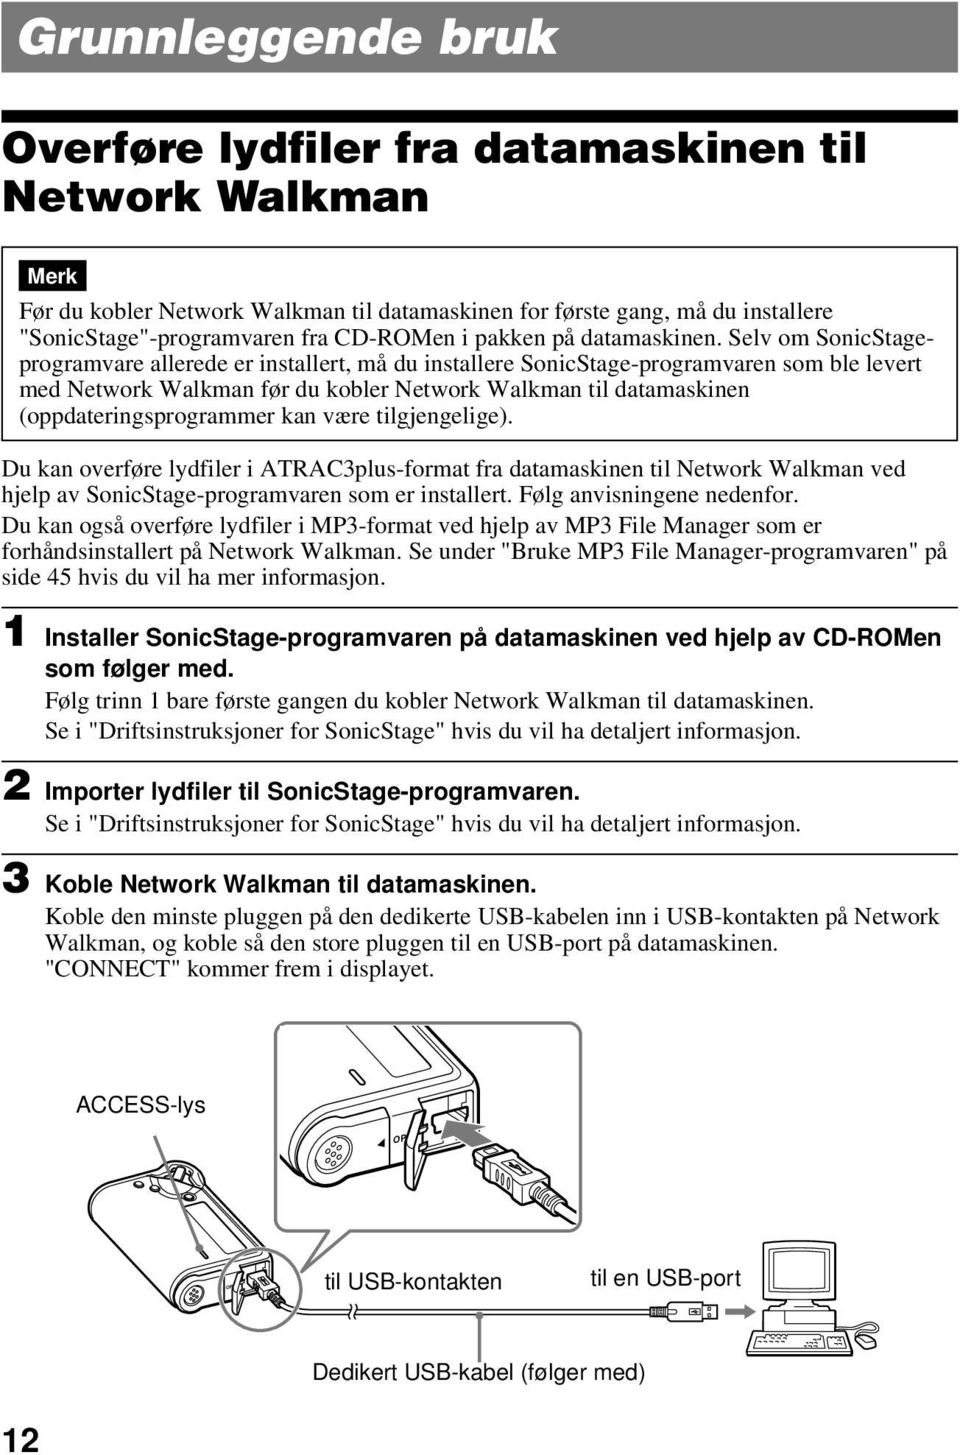 Selv om SonicStageprogramvare allerede er installert, må du installere SonicStage-programvaren som ble levert med Network Walkman før du kobler Network Walkman datamaskinen (oppdateringsprogrammer